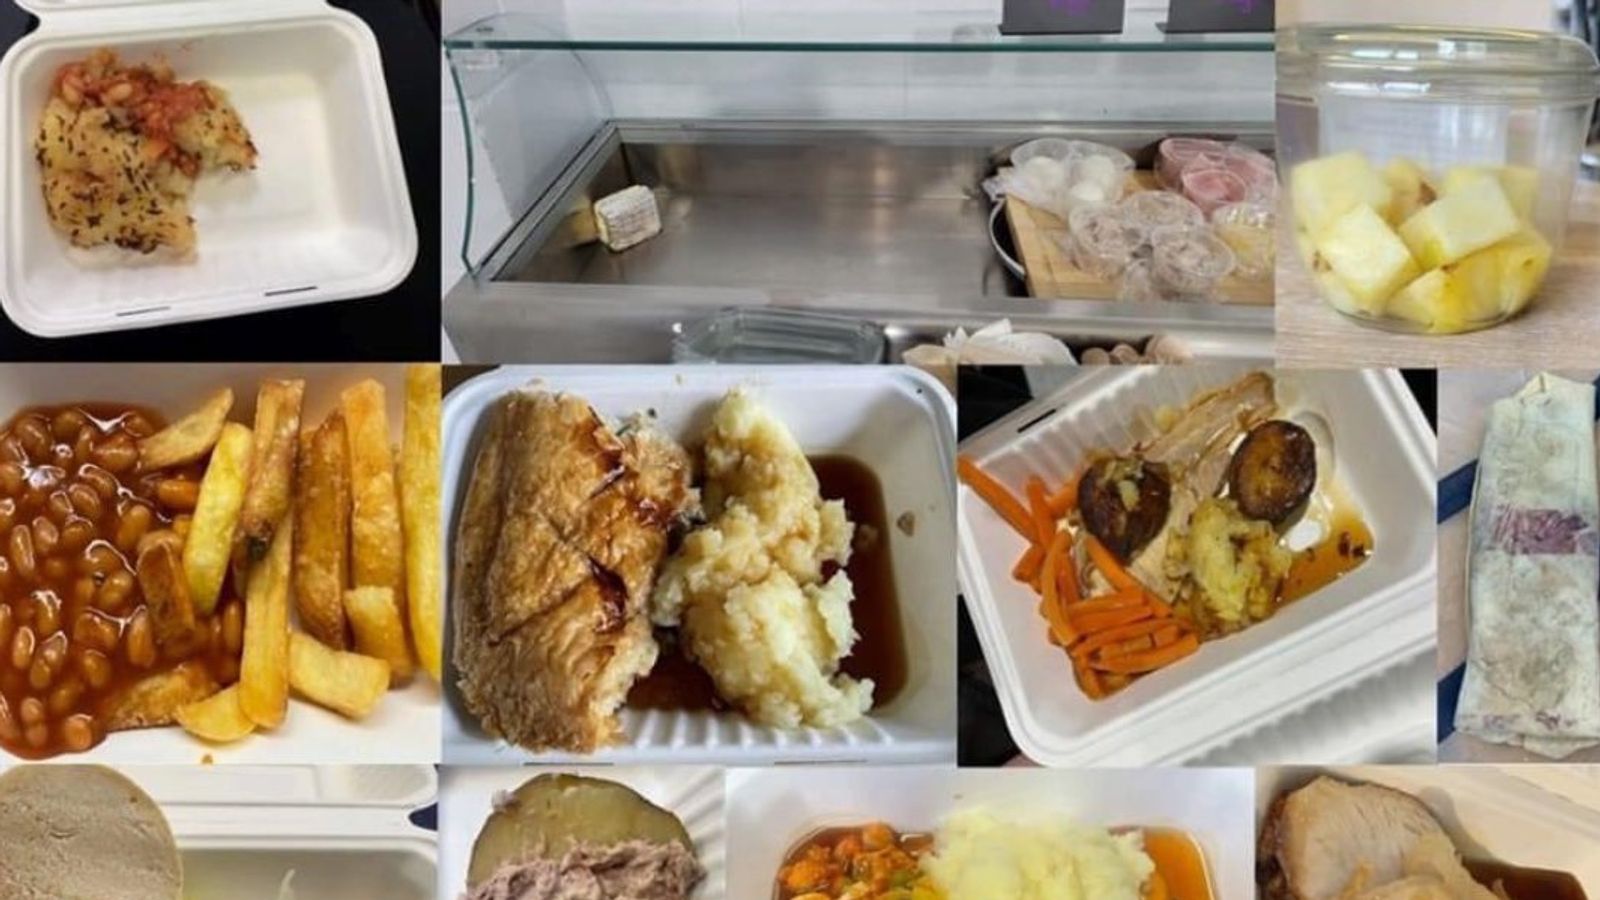 Директорът на Саутхемптън критикува „напълно неприемливата“ храна в собственото му училище